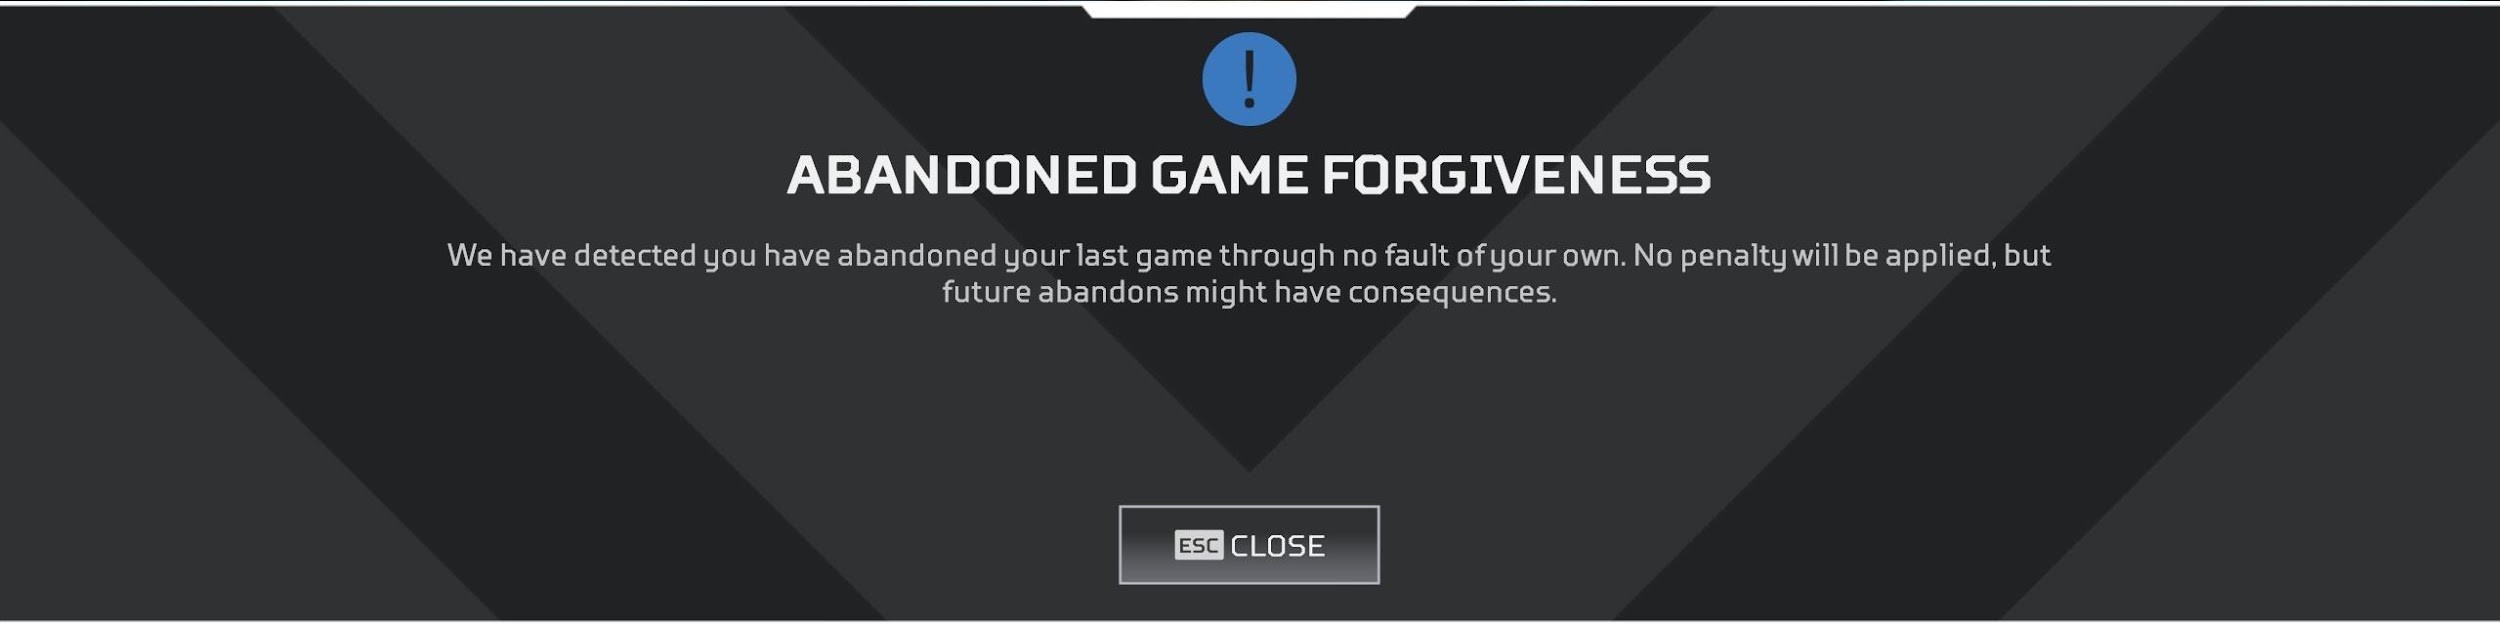 ranked-series-4-abandon-forgiveness.jpg